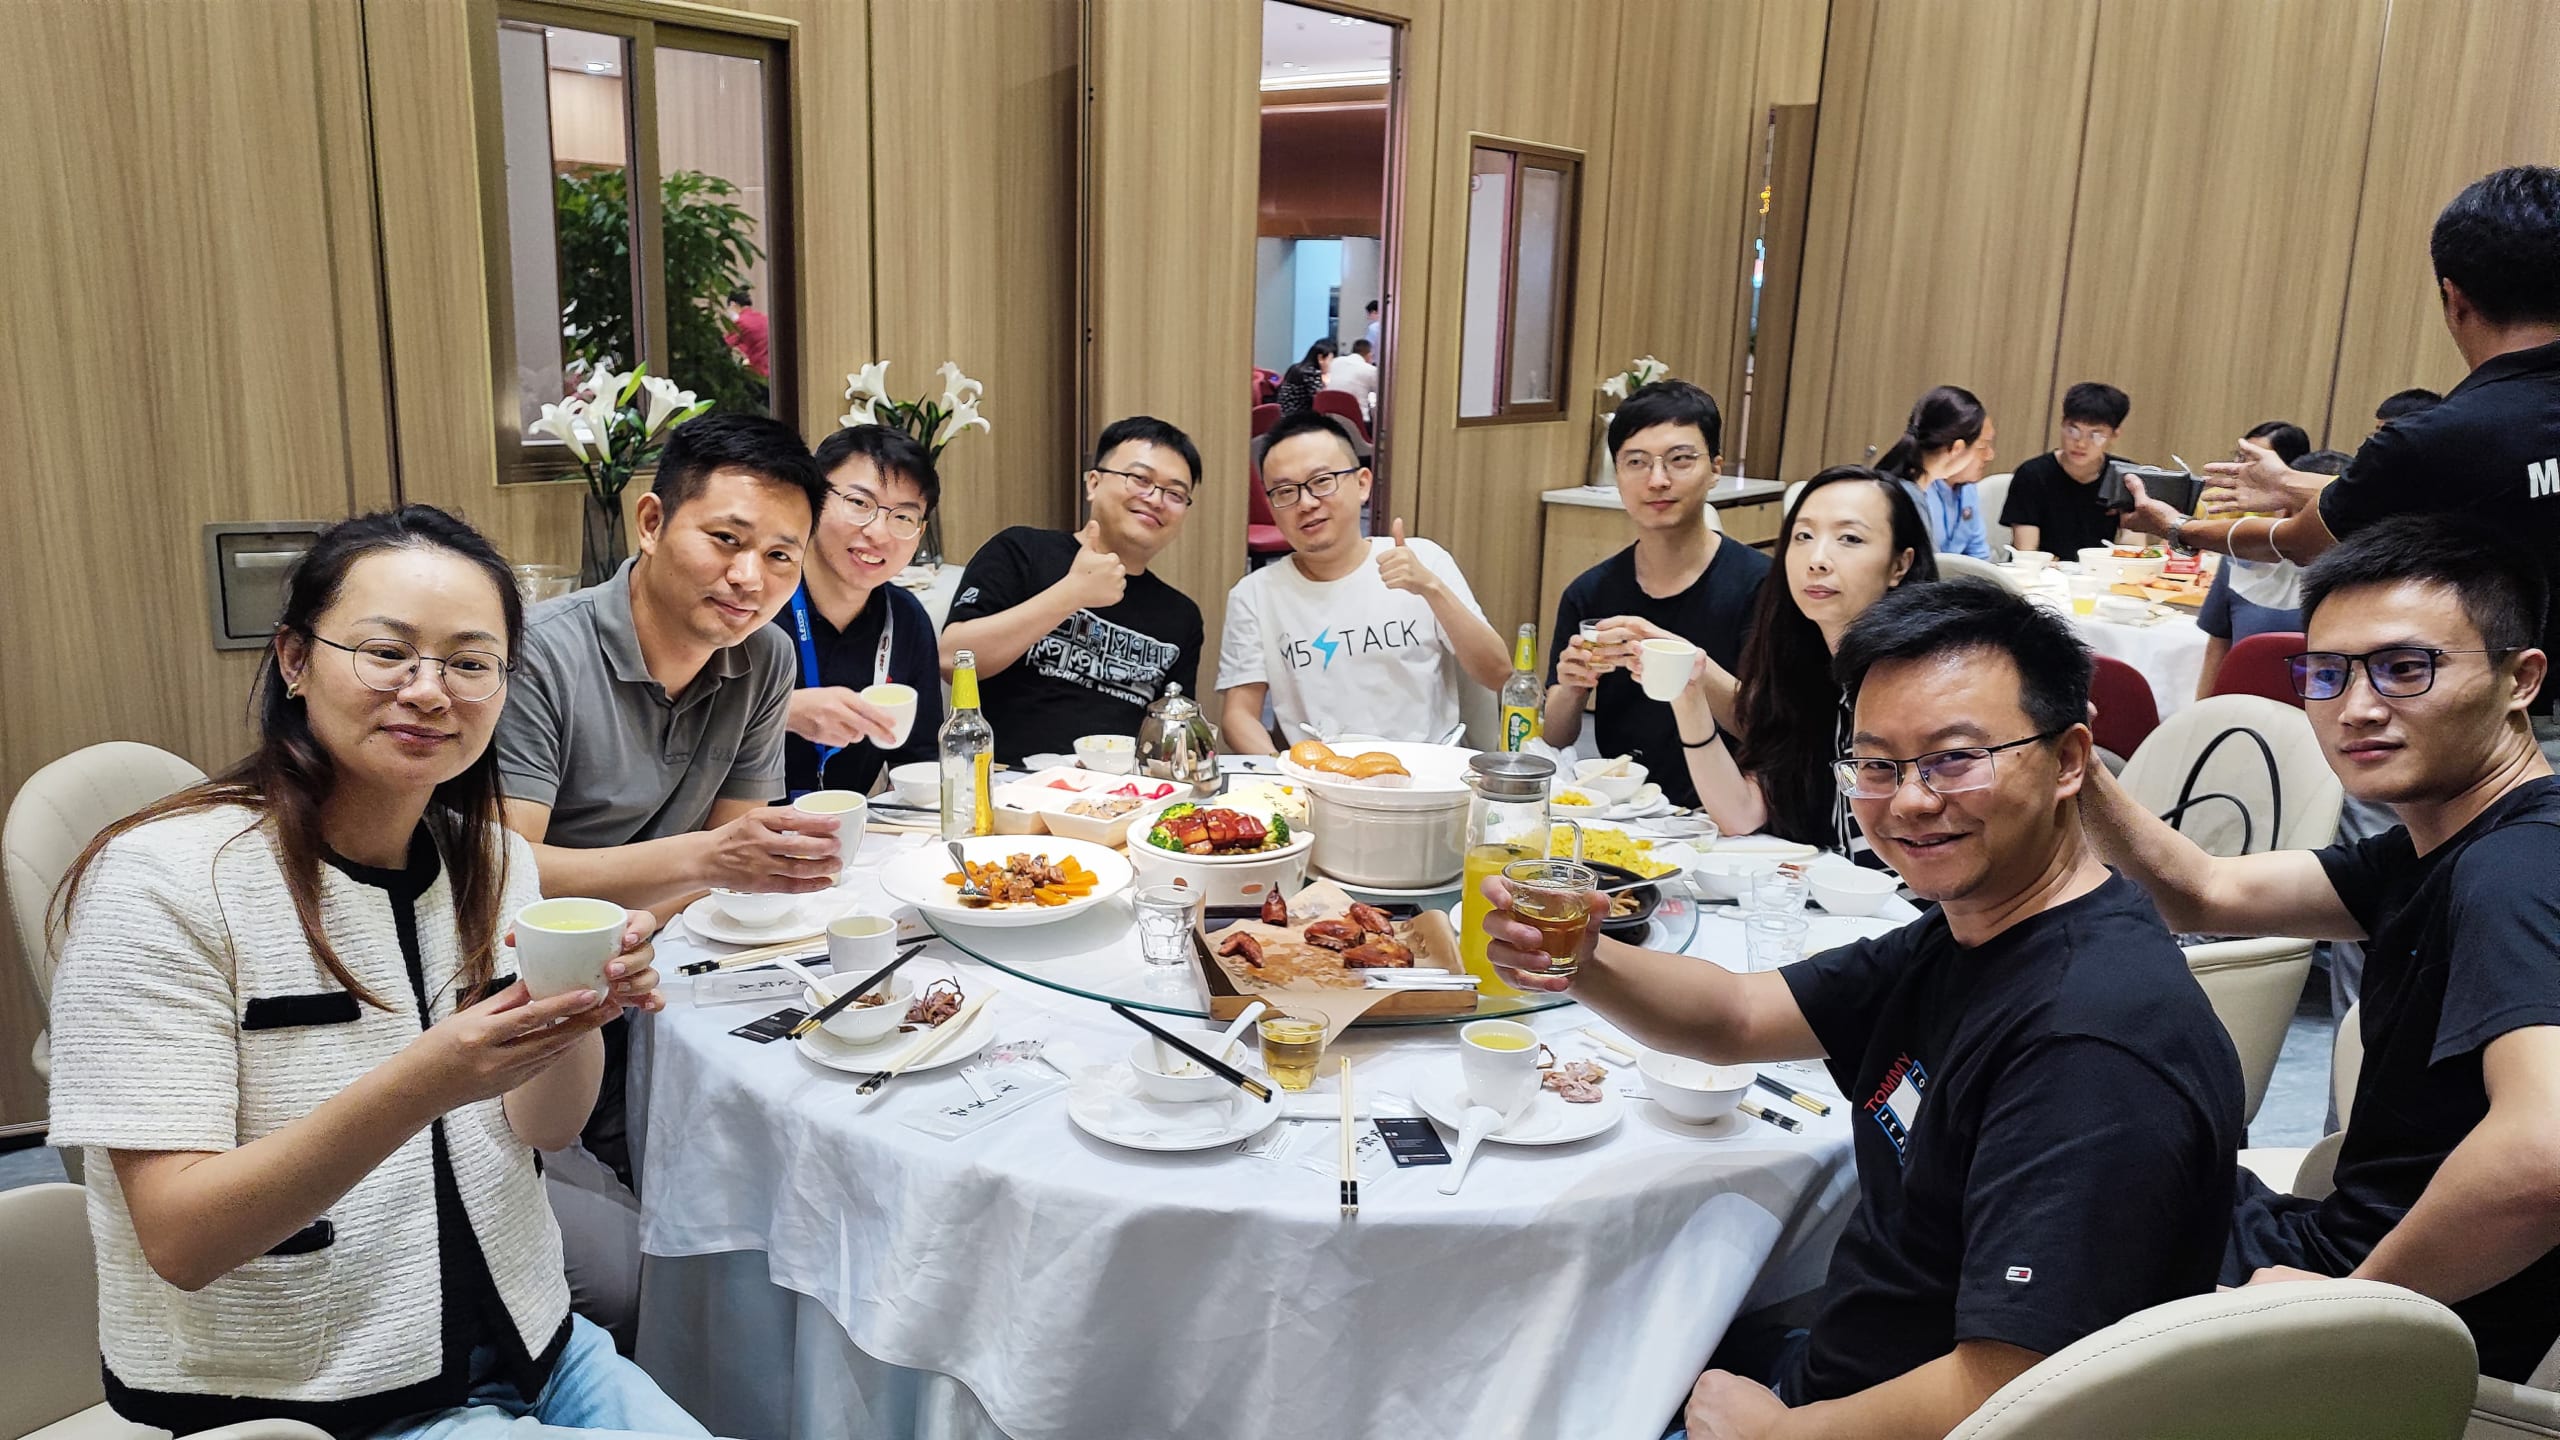 上海DFRobotの深セン訪問に際して、M5Stack、Elephant Roboticsなどの当社（株式会社スイッチサイエンス）取引先を集めた会食。30名以上のハードウェアスタートアップが集合